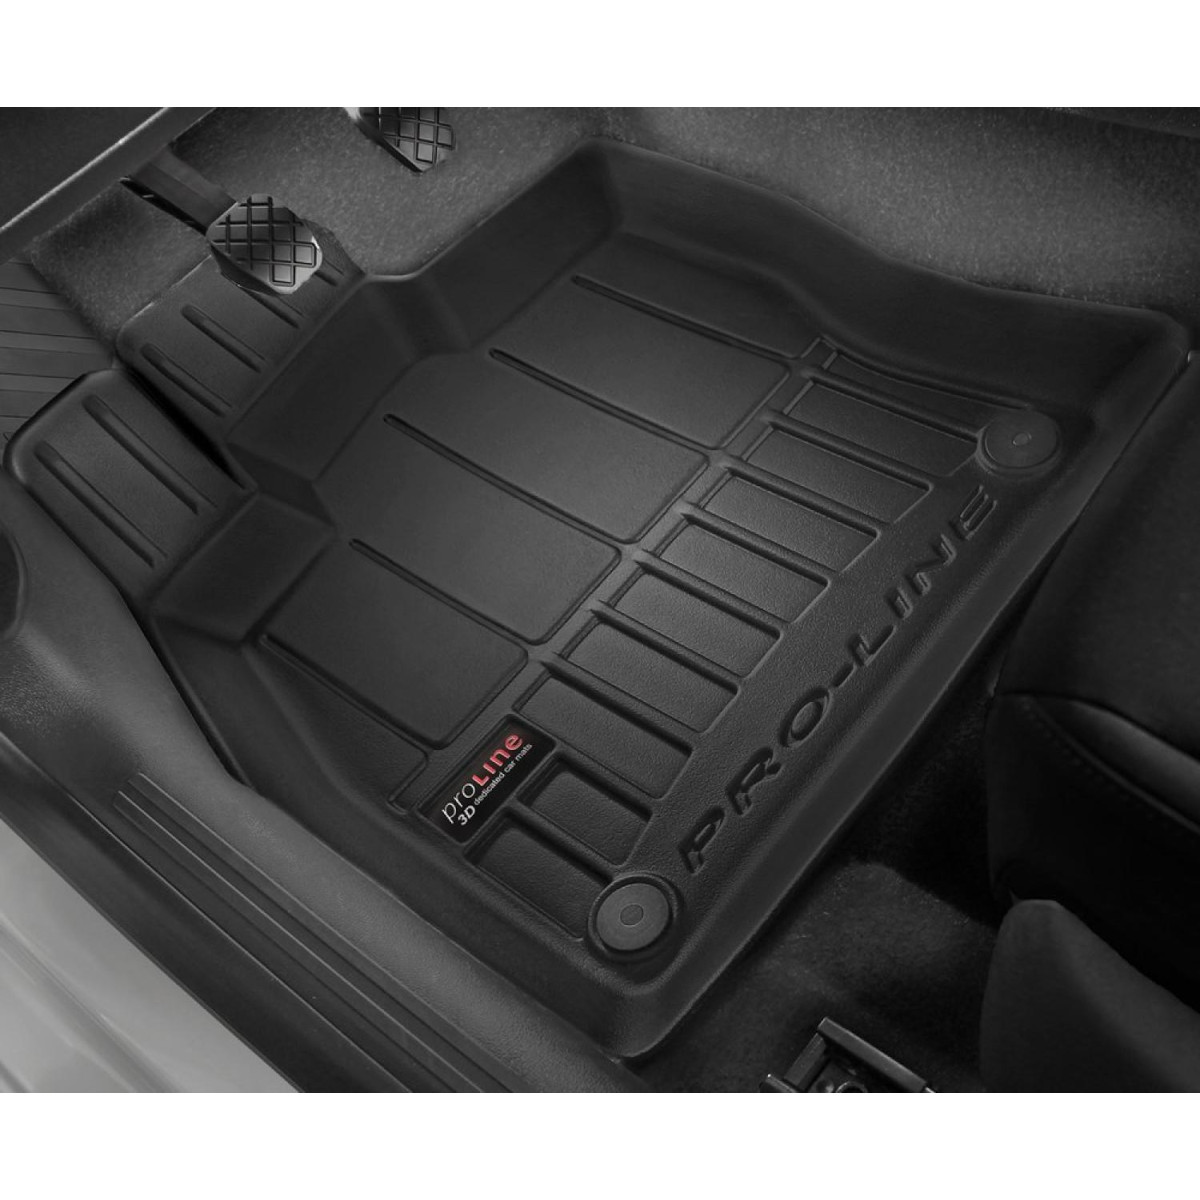 Guminiai kilimėliai Proline Honda HR-V II 2015-2021m. / paaukštintais kraštais